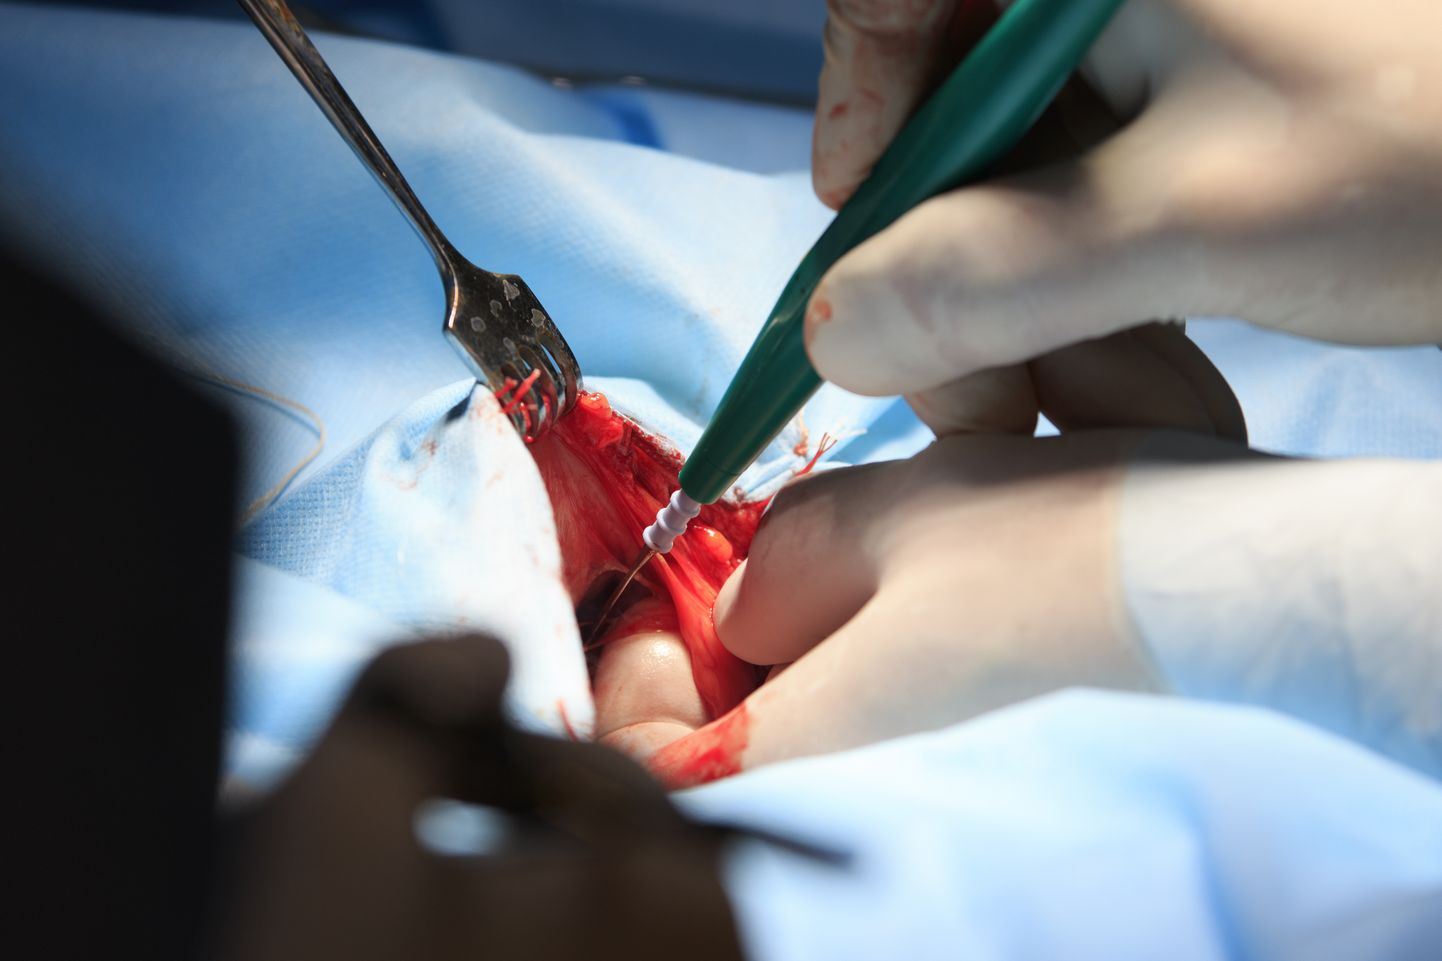 Хирург проводит операцию с помощью электроскальпеля.